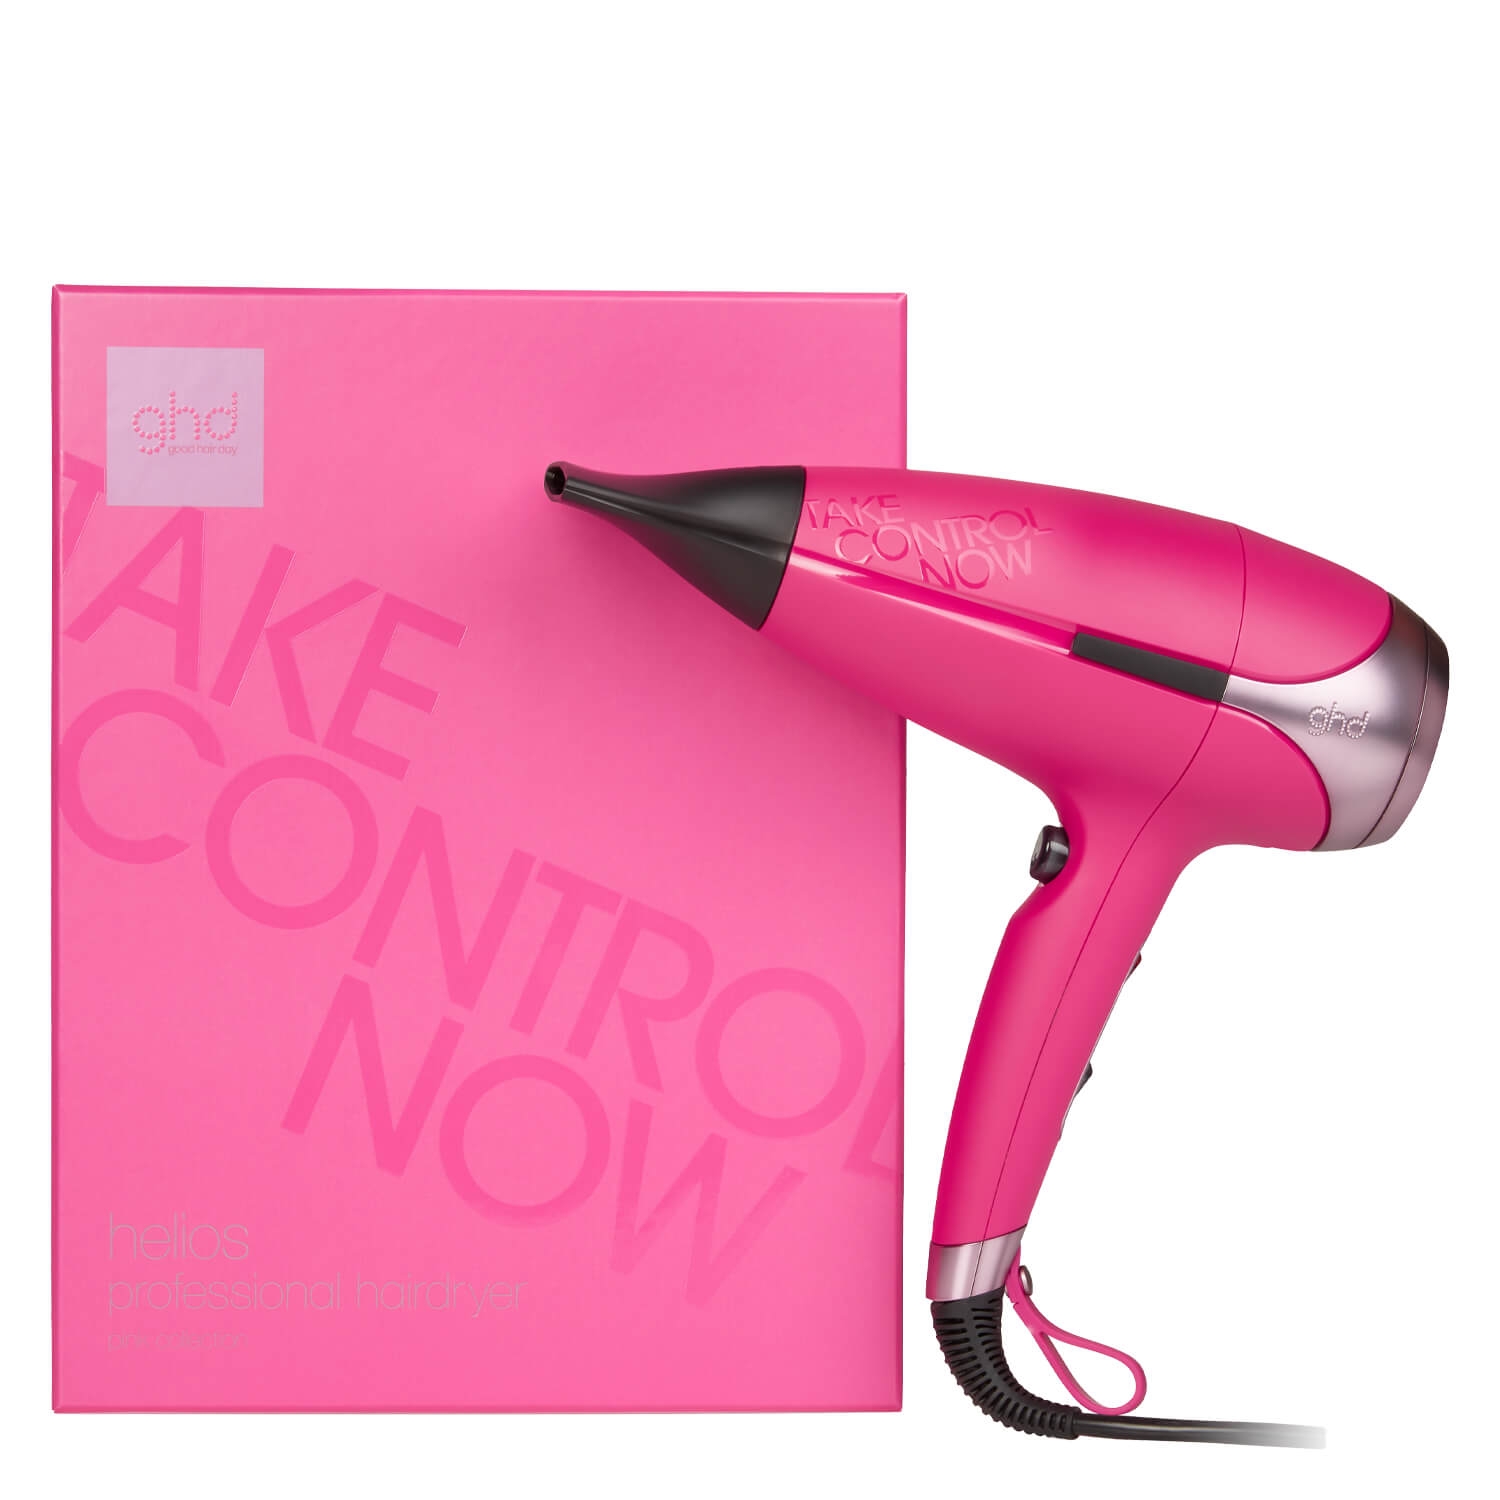 Produktbild von Take Control Now Helios Professional Hairdryer Pink